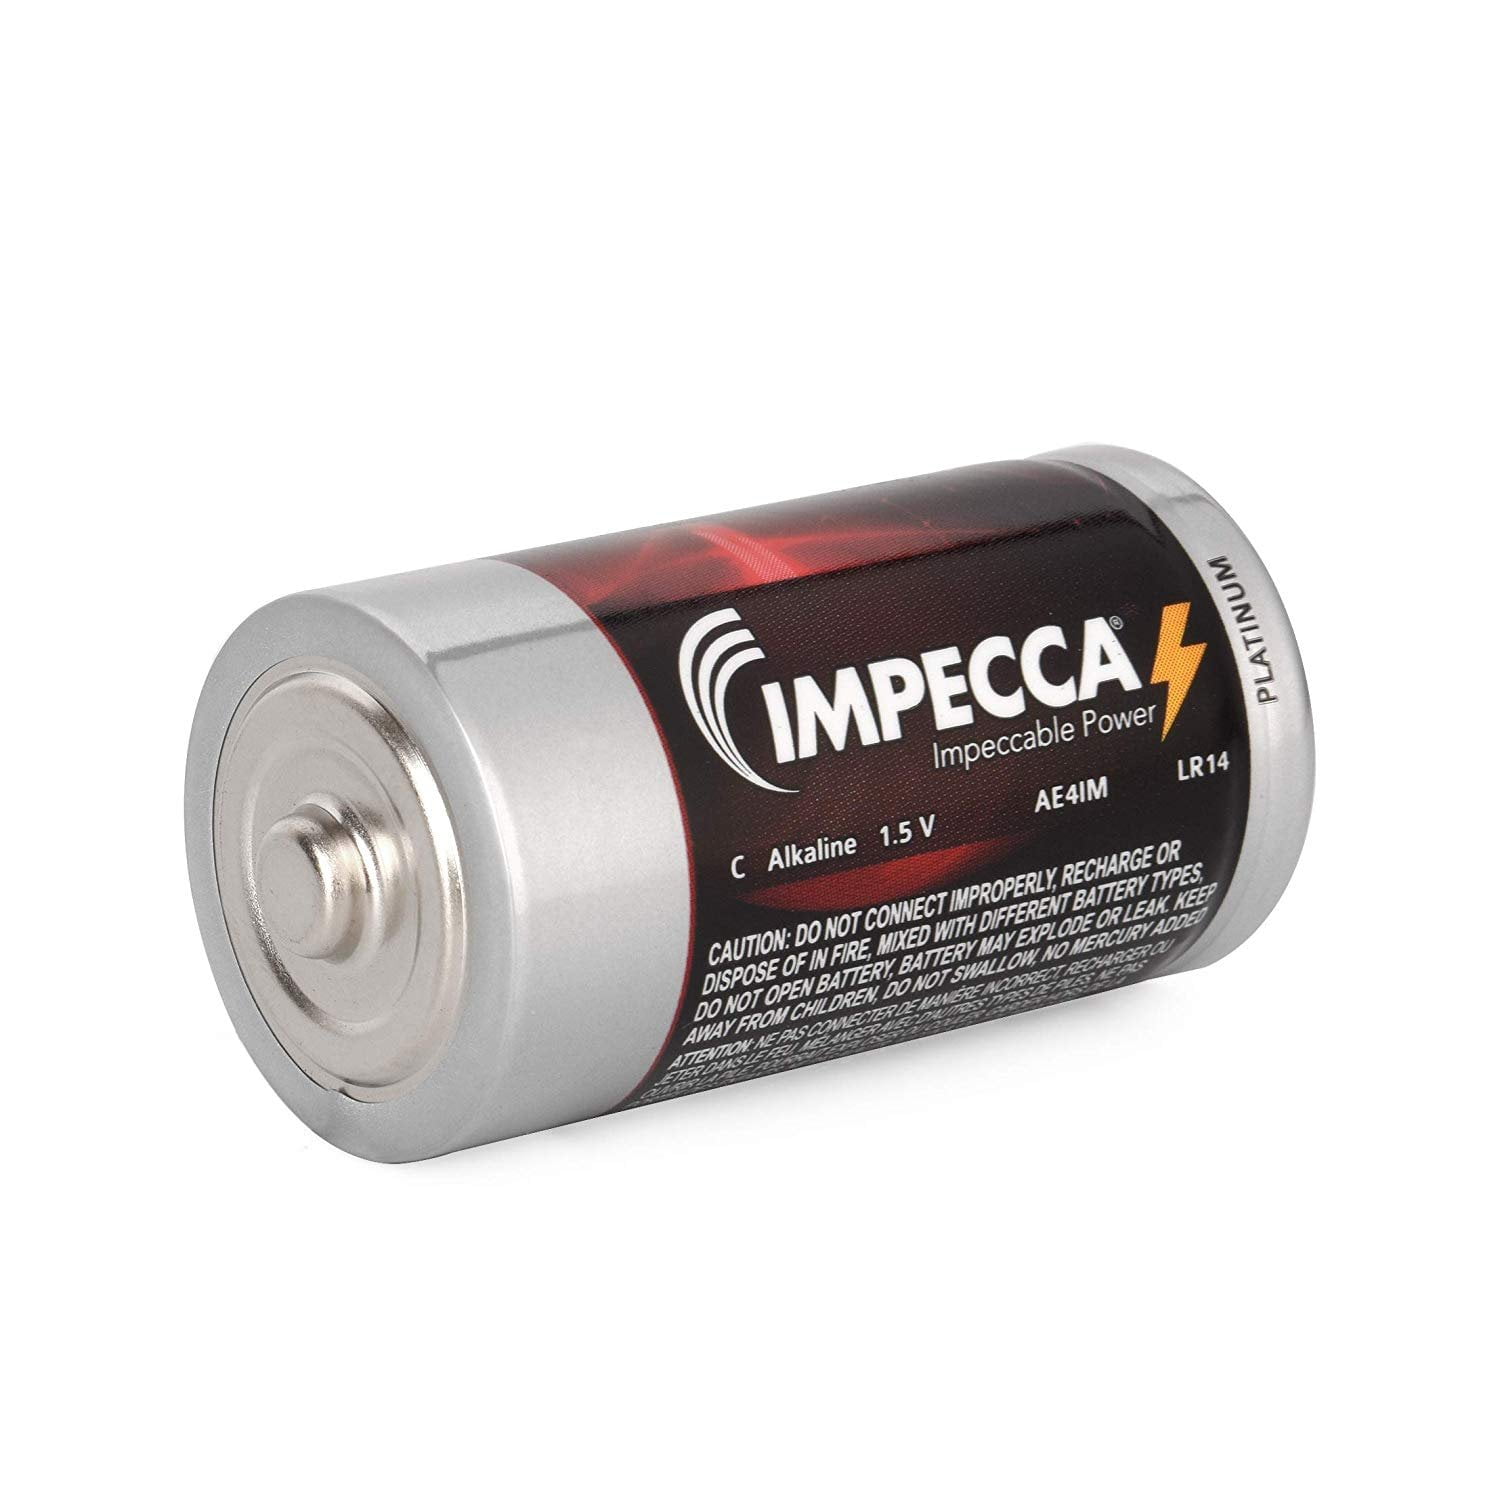 Impecca All Purpose Alkaline C Batteries Platinum Series High